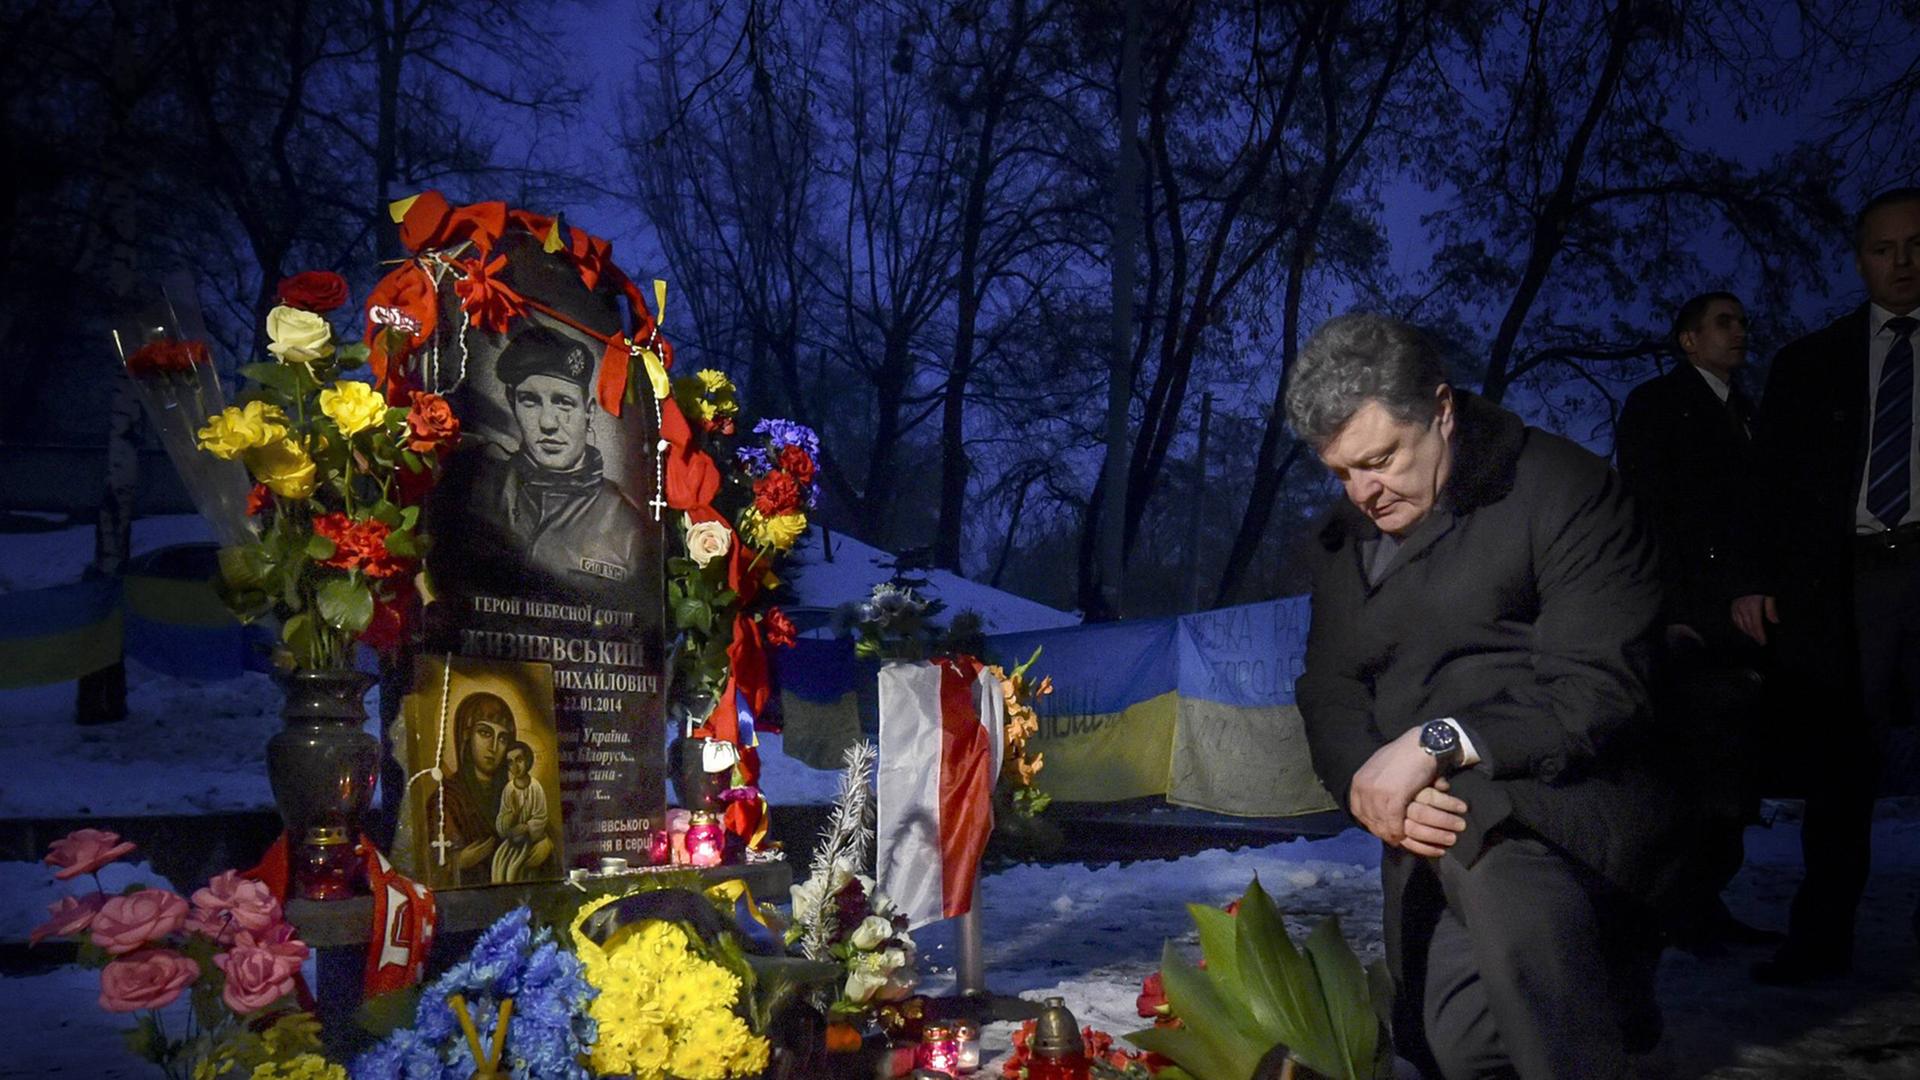 Der ukrainische Präsident Petro Poroschenko gedenkt der Opfer der tödlichen Schüsse auf dem Maidan in Kiew vom Februar 2014